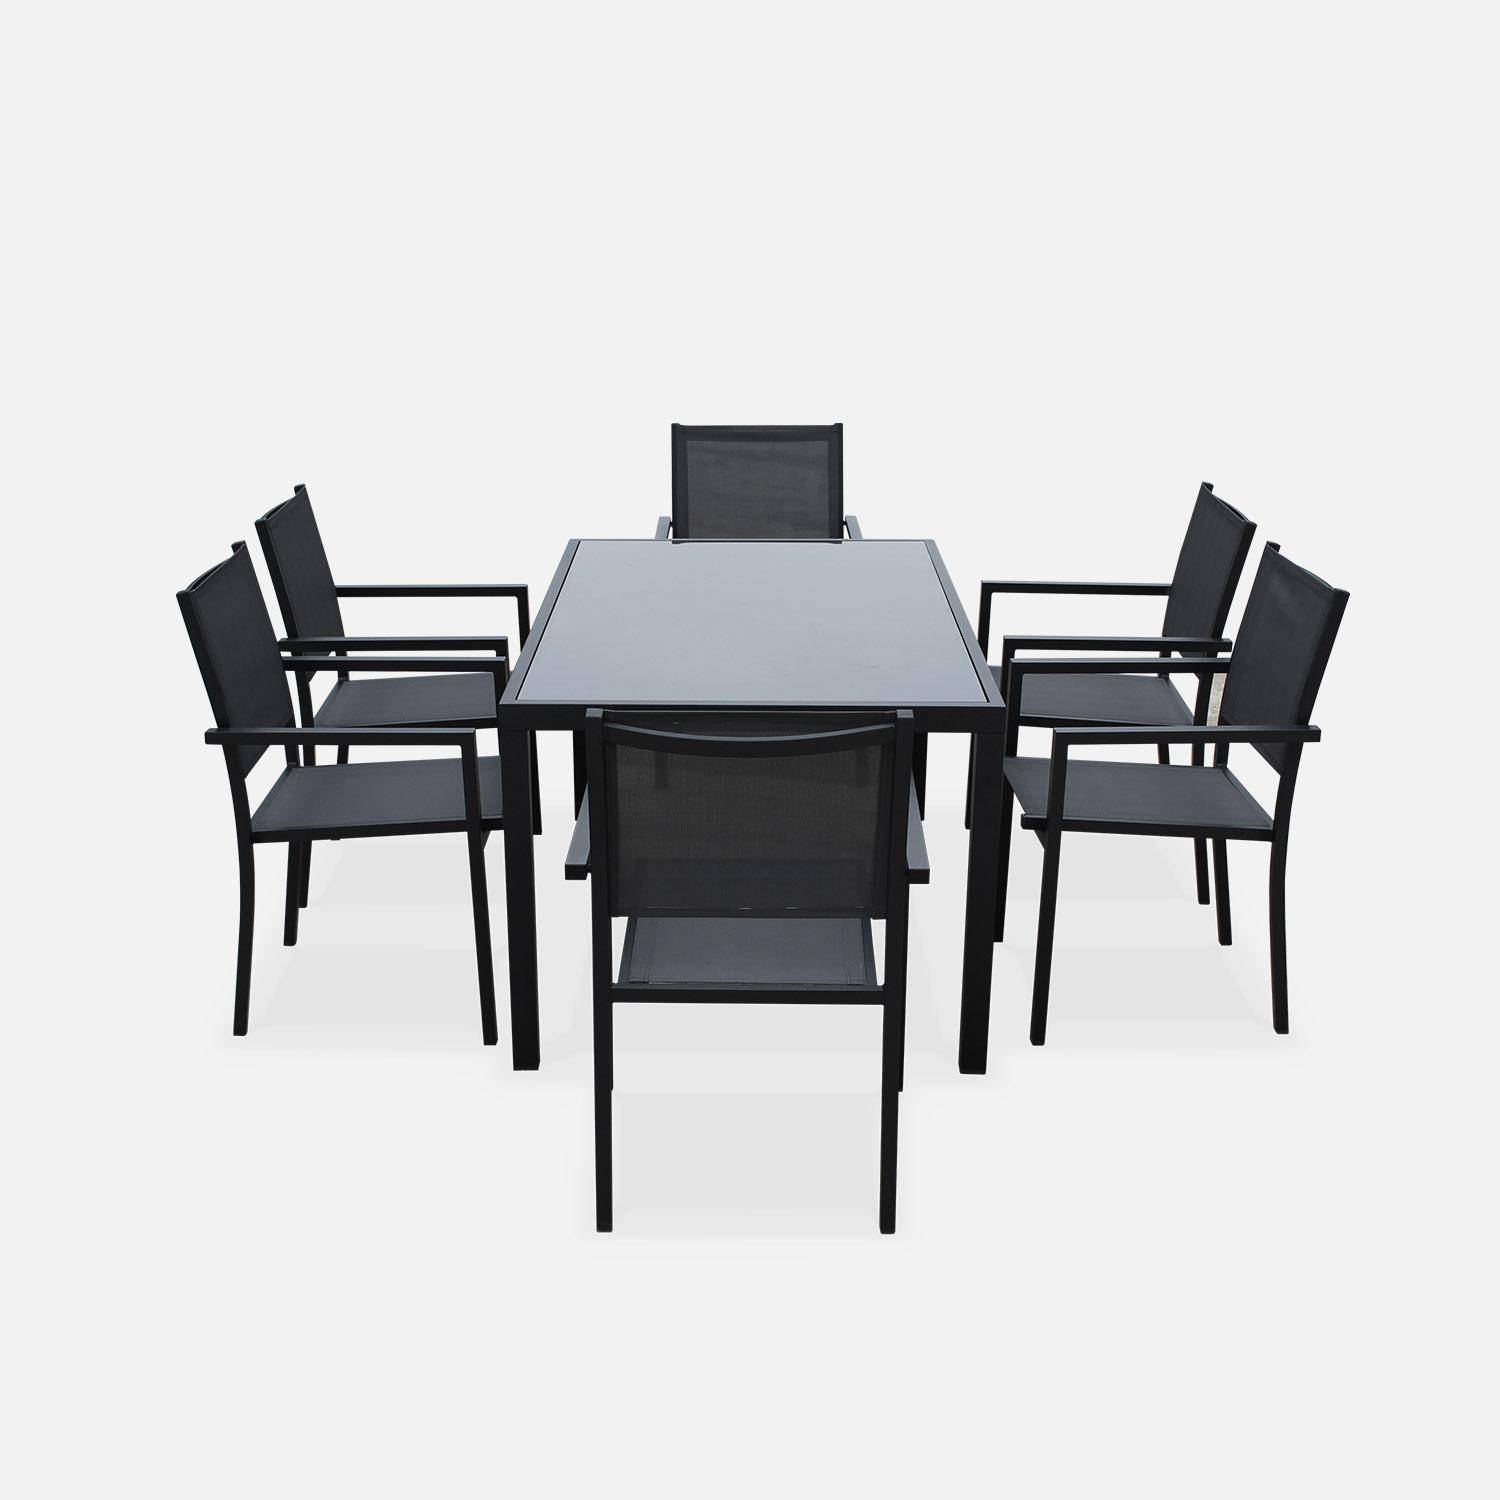 Salon de jardin en aluminium et textilène - Capua - Anthracite, gris - 6 places - 1 grande table rectangulaire, 6 fauteuils empilables Photo3